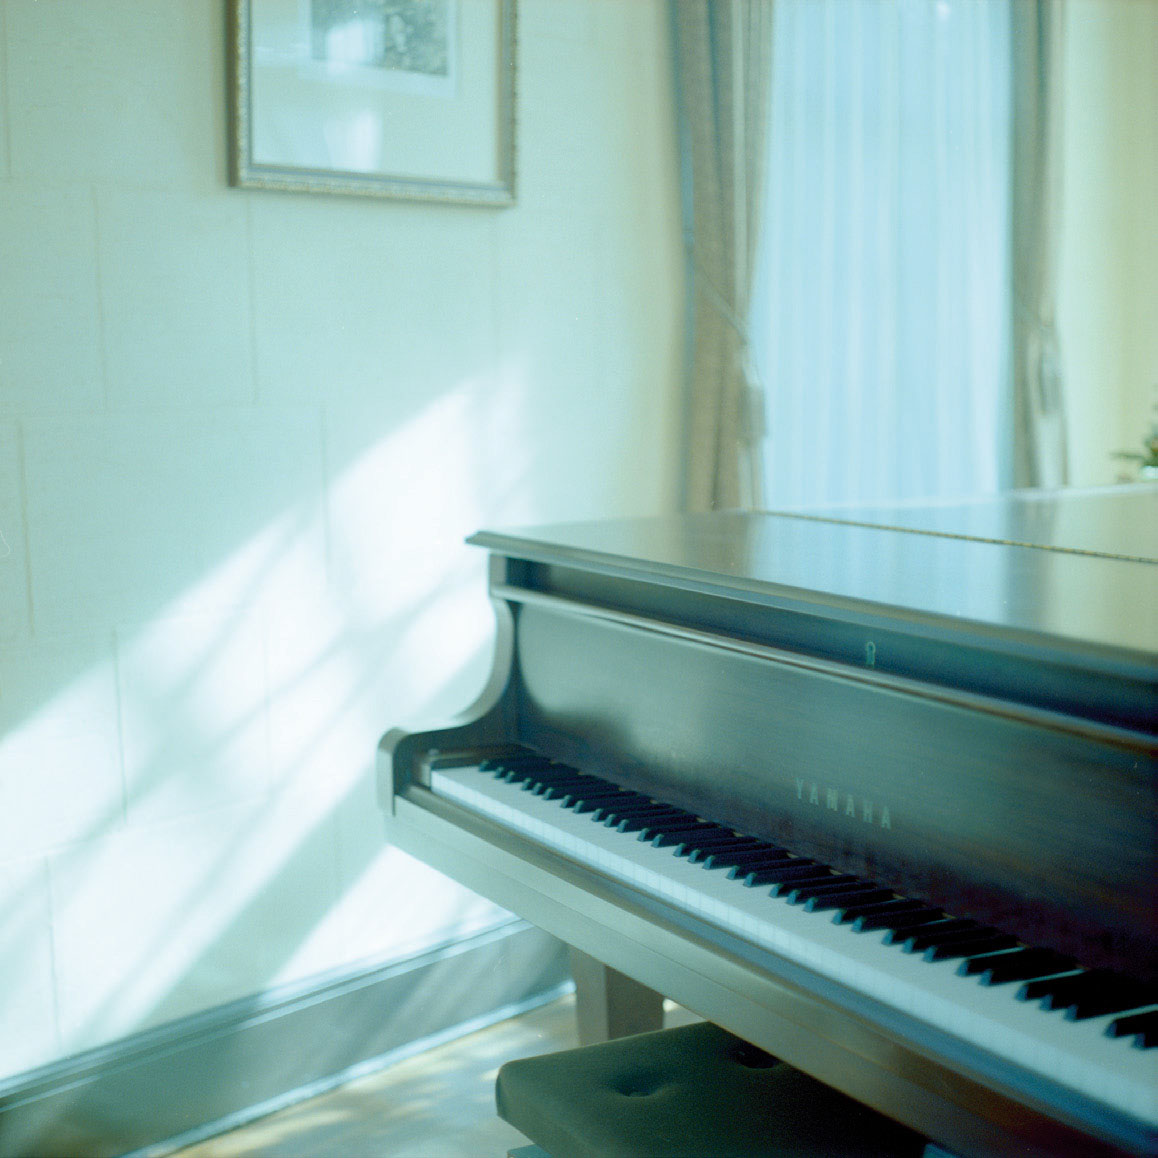 映り込みや角度によって多彩な視点が得られる ピアノ 大村祐里子の身近なものの撮り方辞典 第16回 Pictures